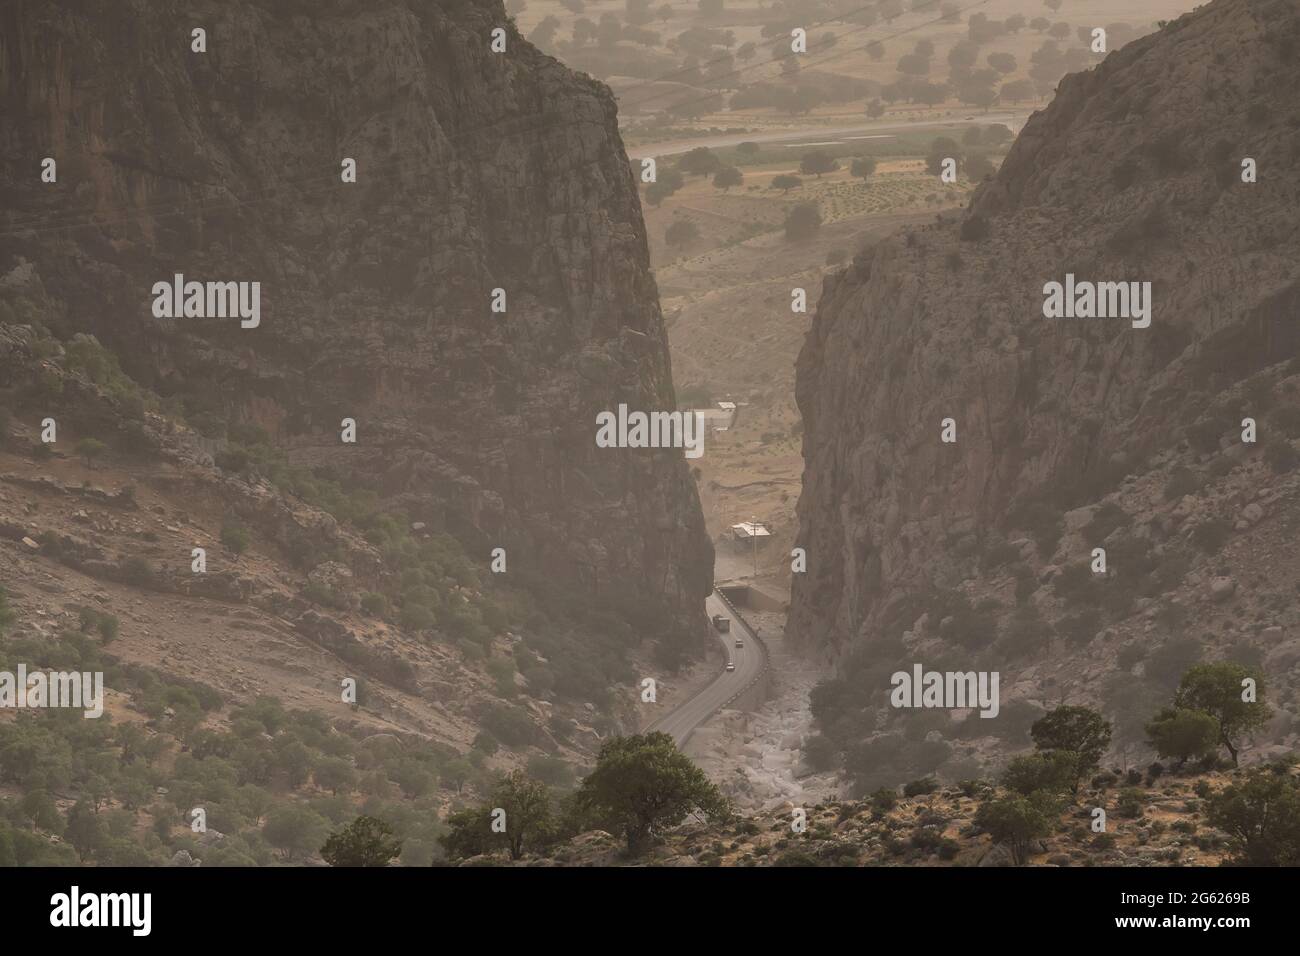 Cañón natural 'Tange bol hayat', Shiraz Way, Zagros montañas, Abolhayat, suburbio de Shiraz, Provincia de Fars, Irán, Persia, Asia Occidental, Asia Foto de stock